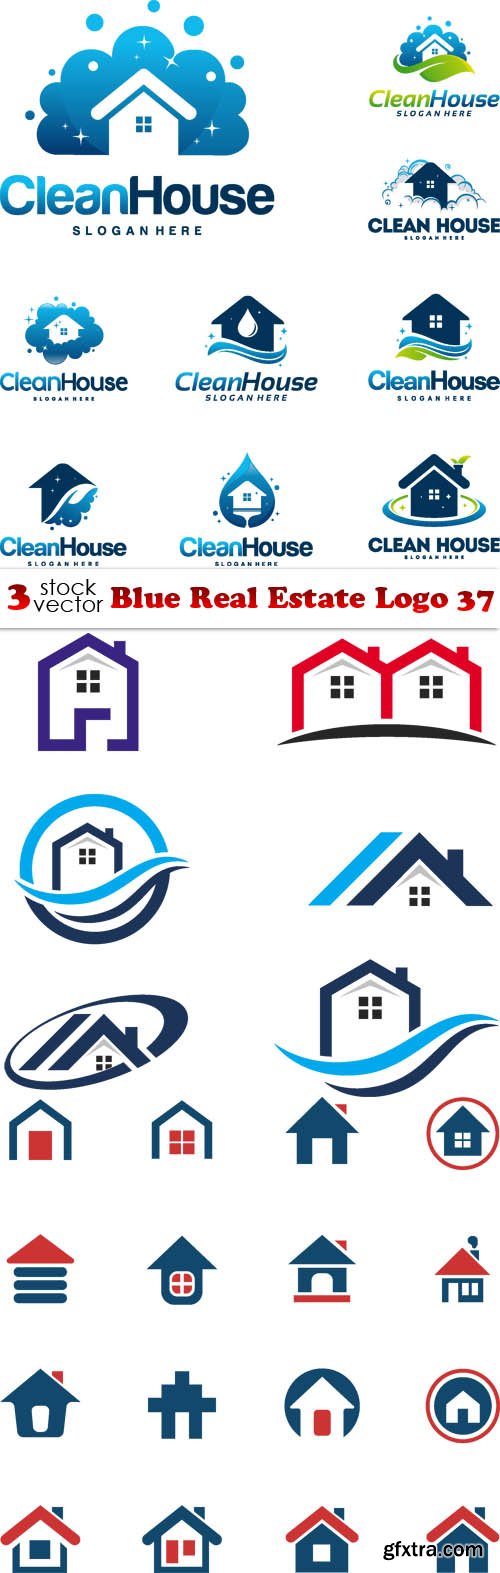 Vectors - Blue Real Estate Logo 37